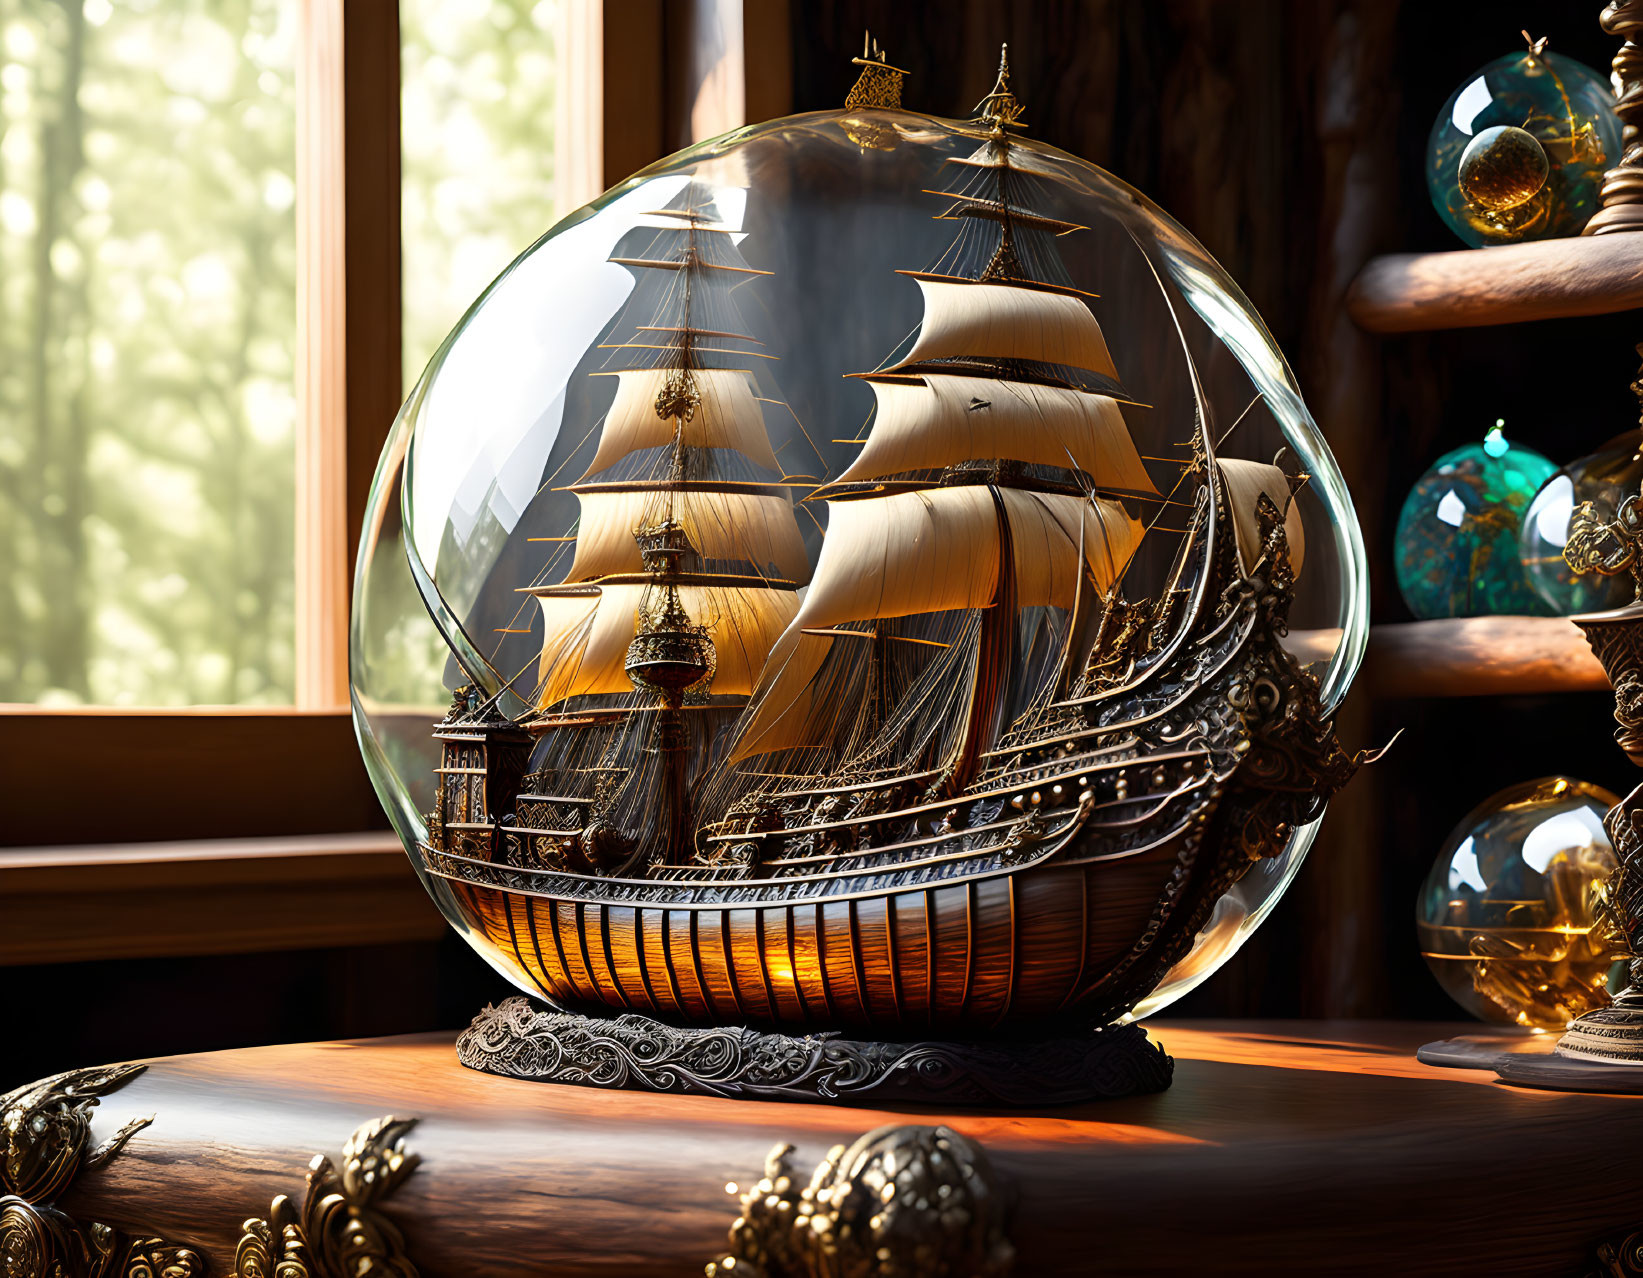 Pirate ship in a globe